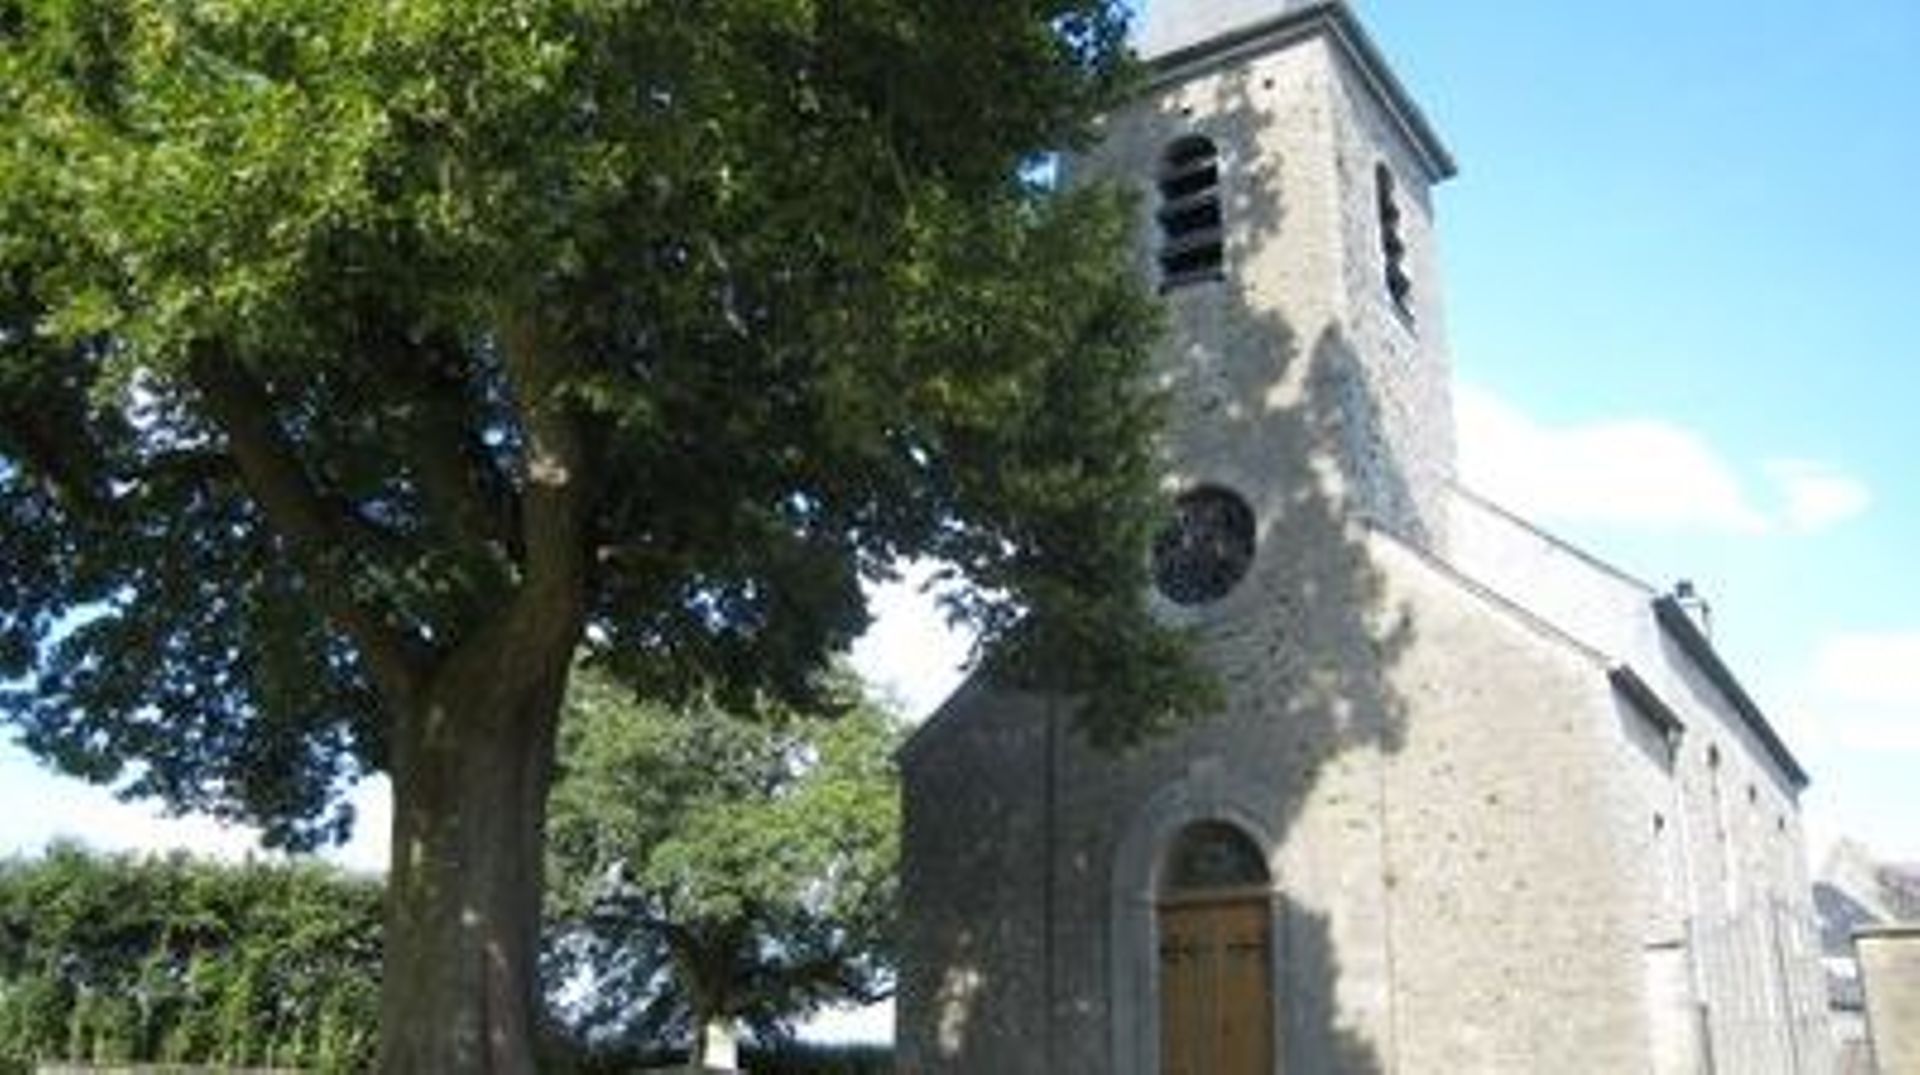 Tilleul devant l'église Saint-Feuillen